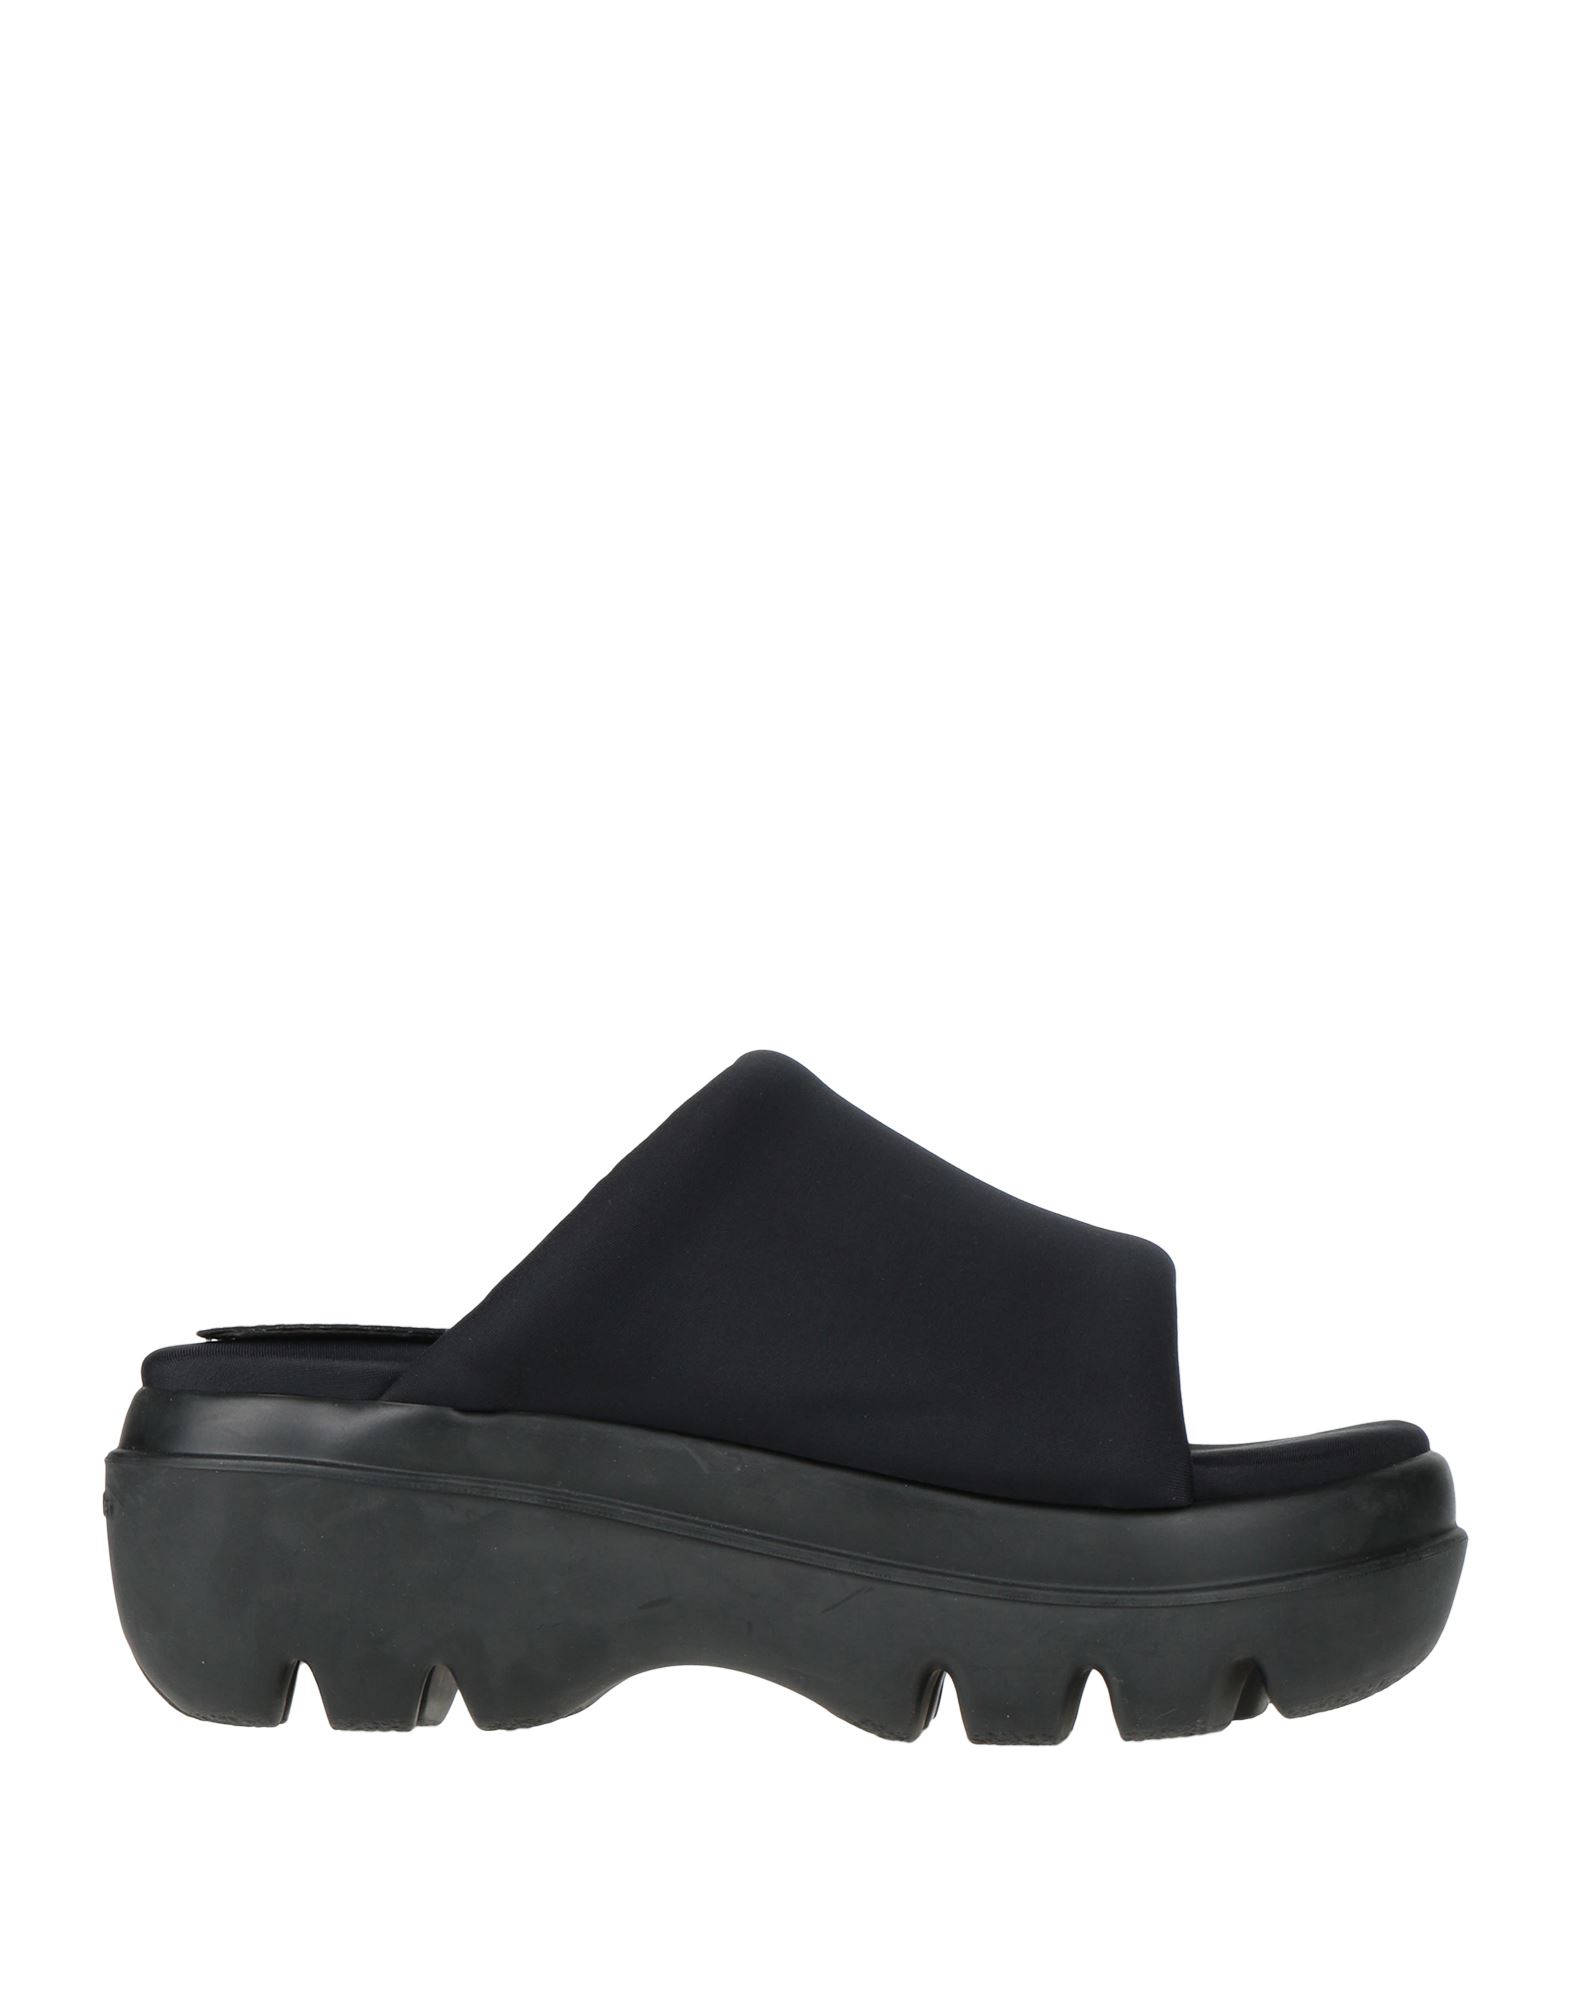 Shop Proenza Schouler Woman Sandals Black Size 8 Textile Fibers